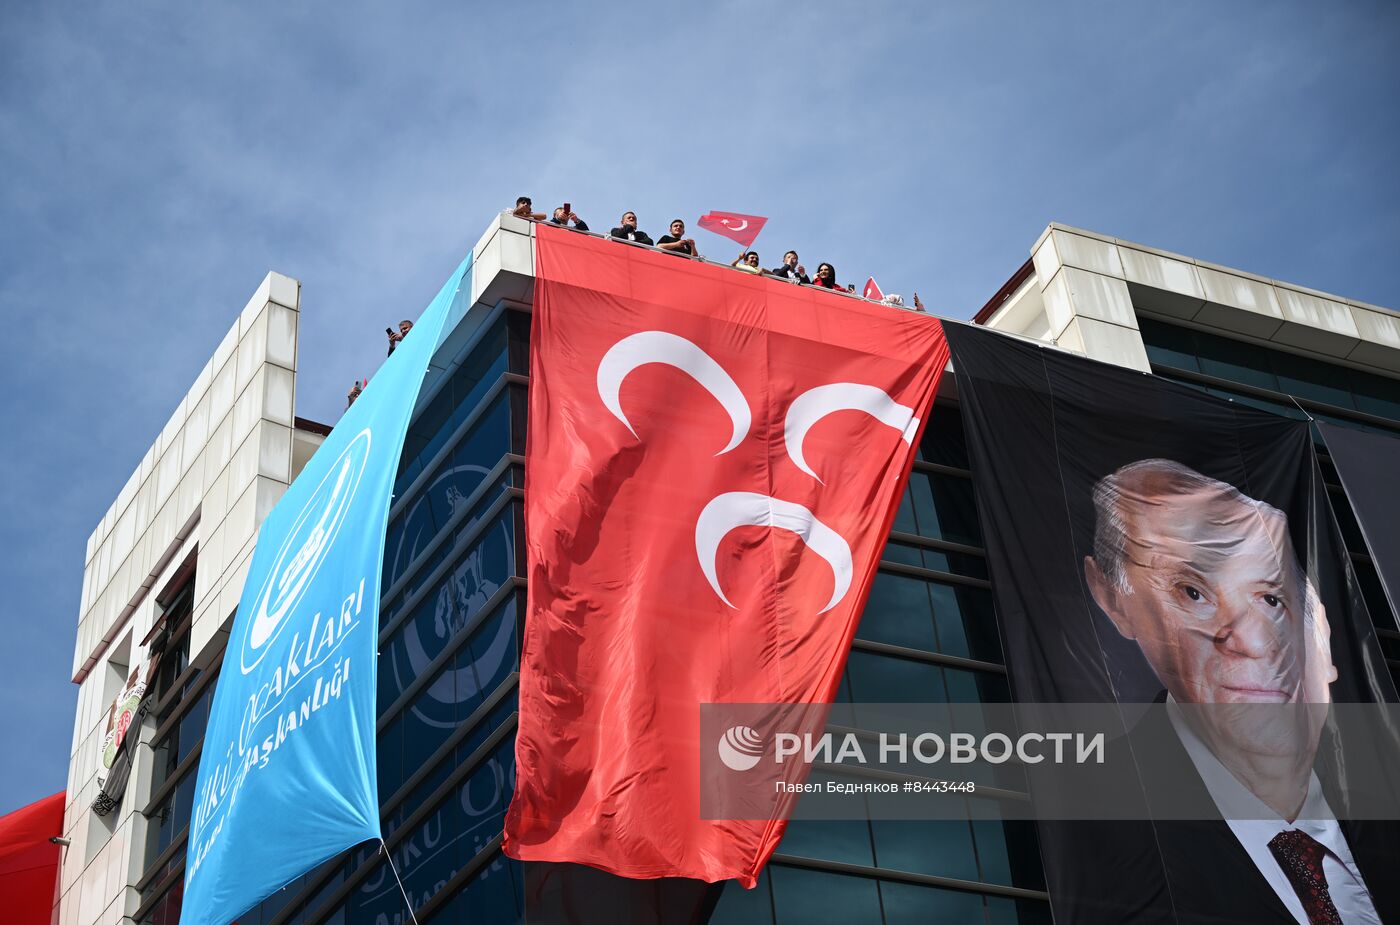 Предвыборные мероприятия президента Турции Р. Эрдогана